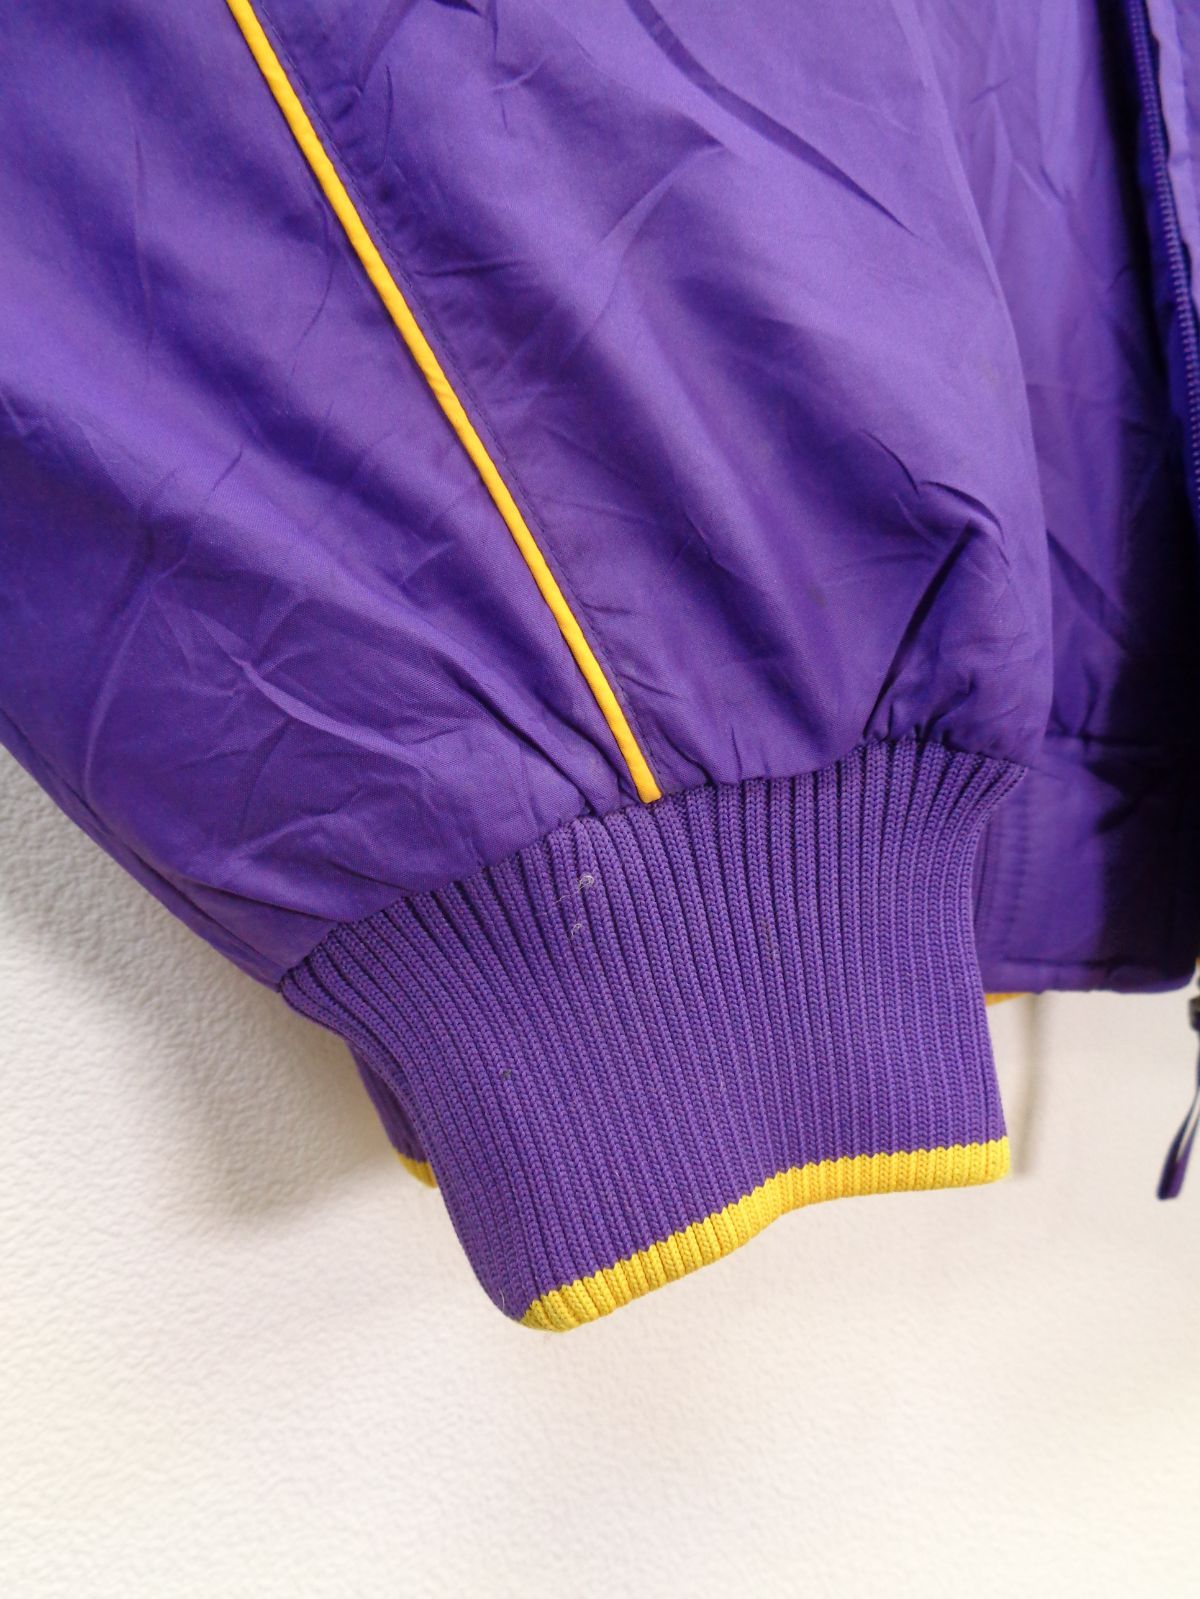 ナイキ USAカレッジ LSU ナイロンジャケット 刺繍 紫 A-25 - メルカリ